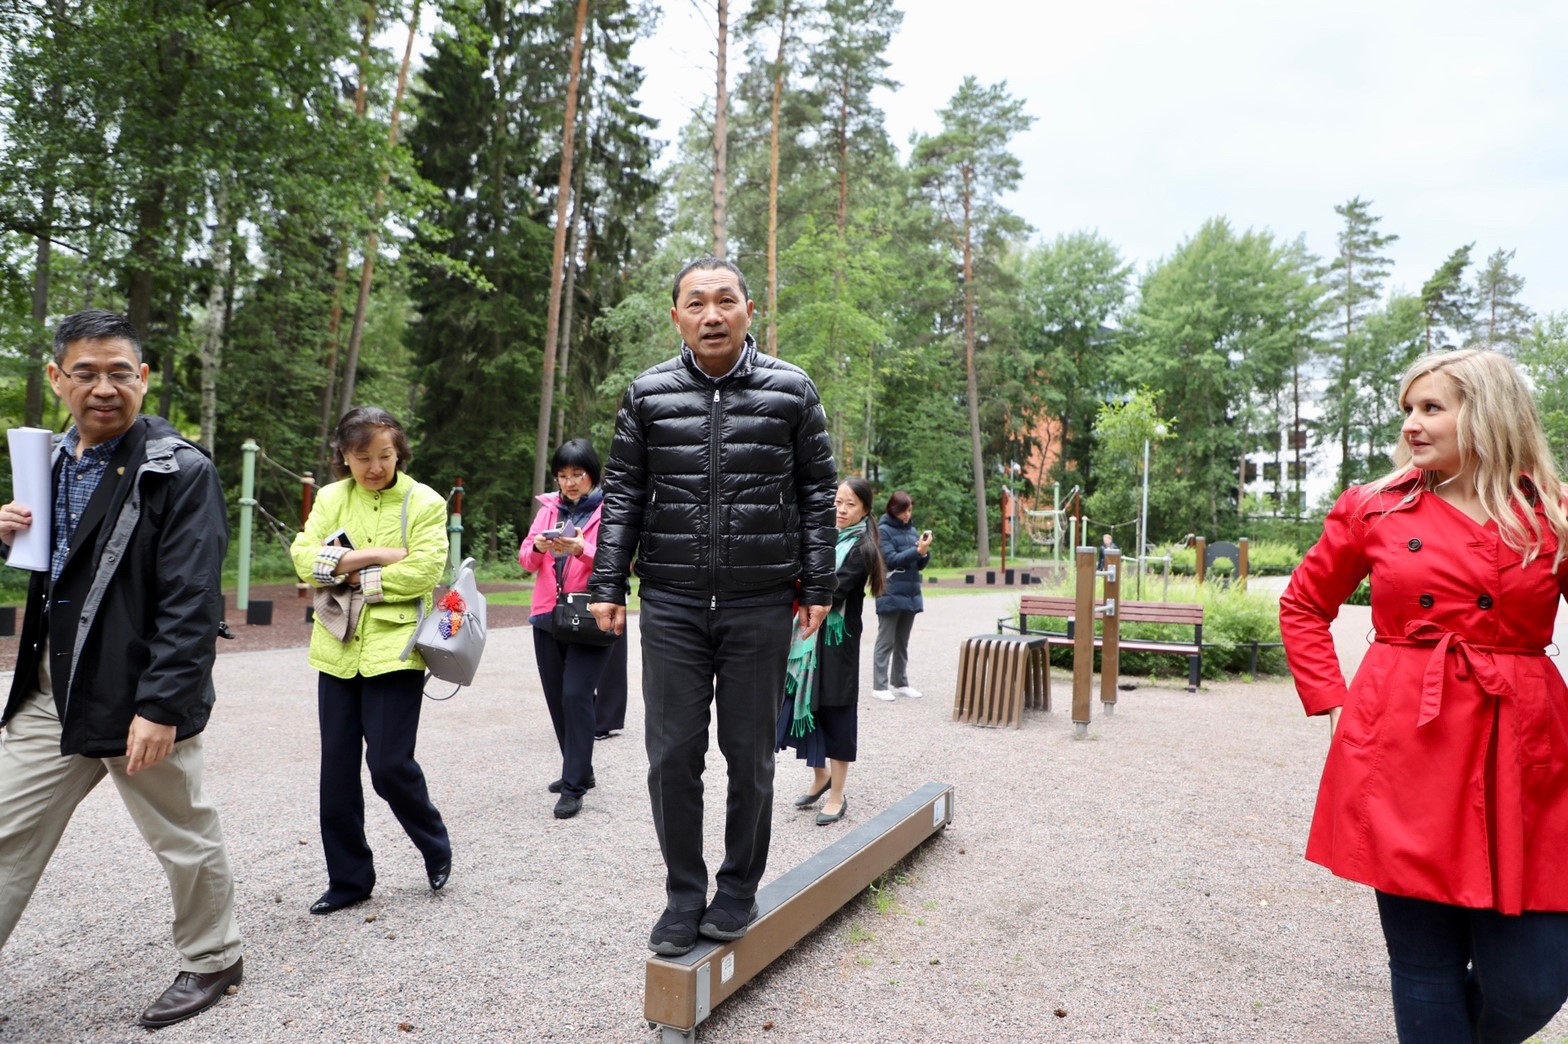 侯友宜北歐之行抵首站芬蘭 參訪高齡公園共融式遊具設計